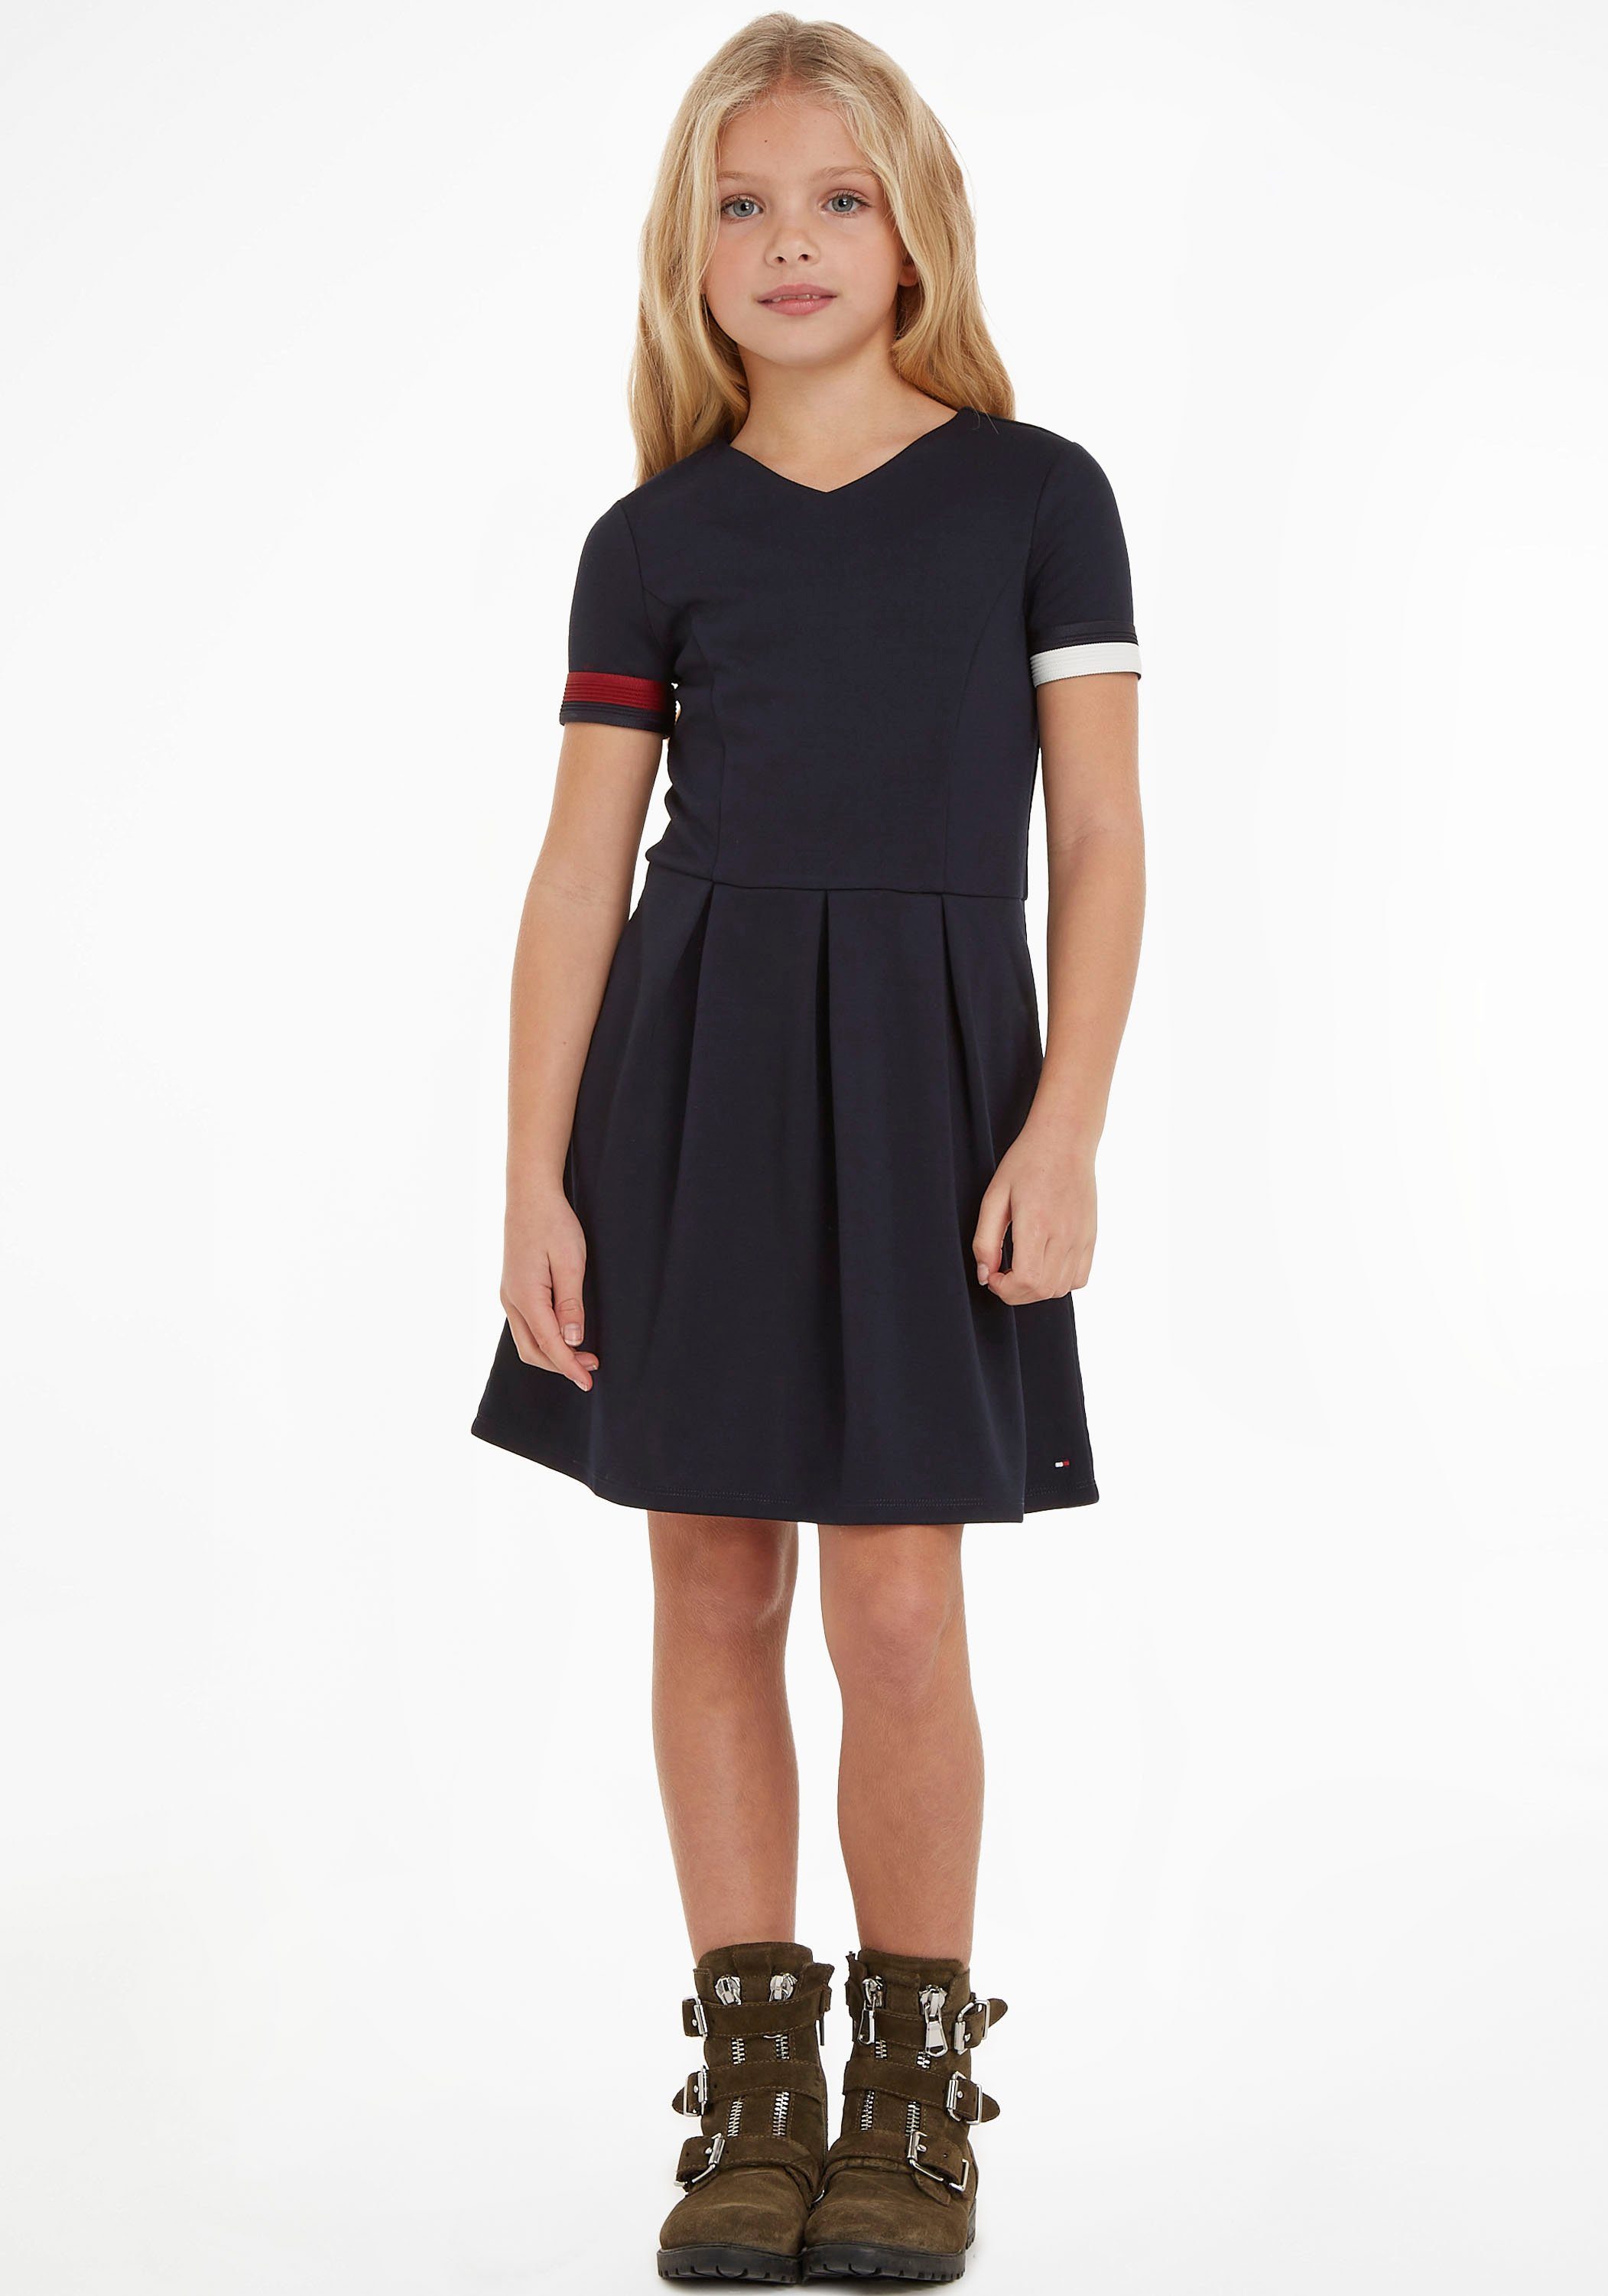 Tommy Hilfiger Blusenkleid GLOBAL STRIPE PUNTO DRESS Kinder Kids Junior MiniMe,für Mädchen dunkelblau | Sommerkleider